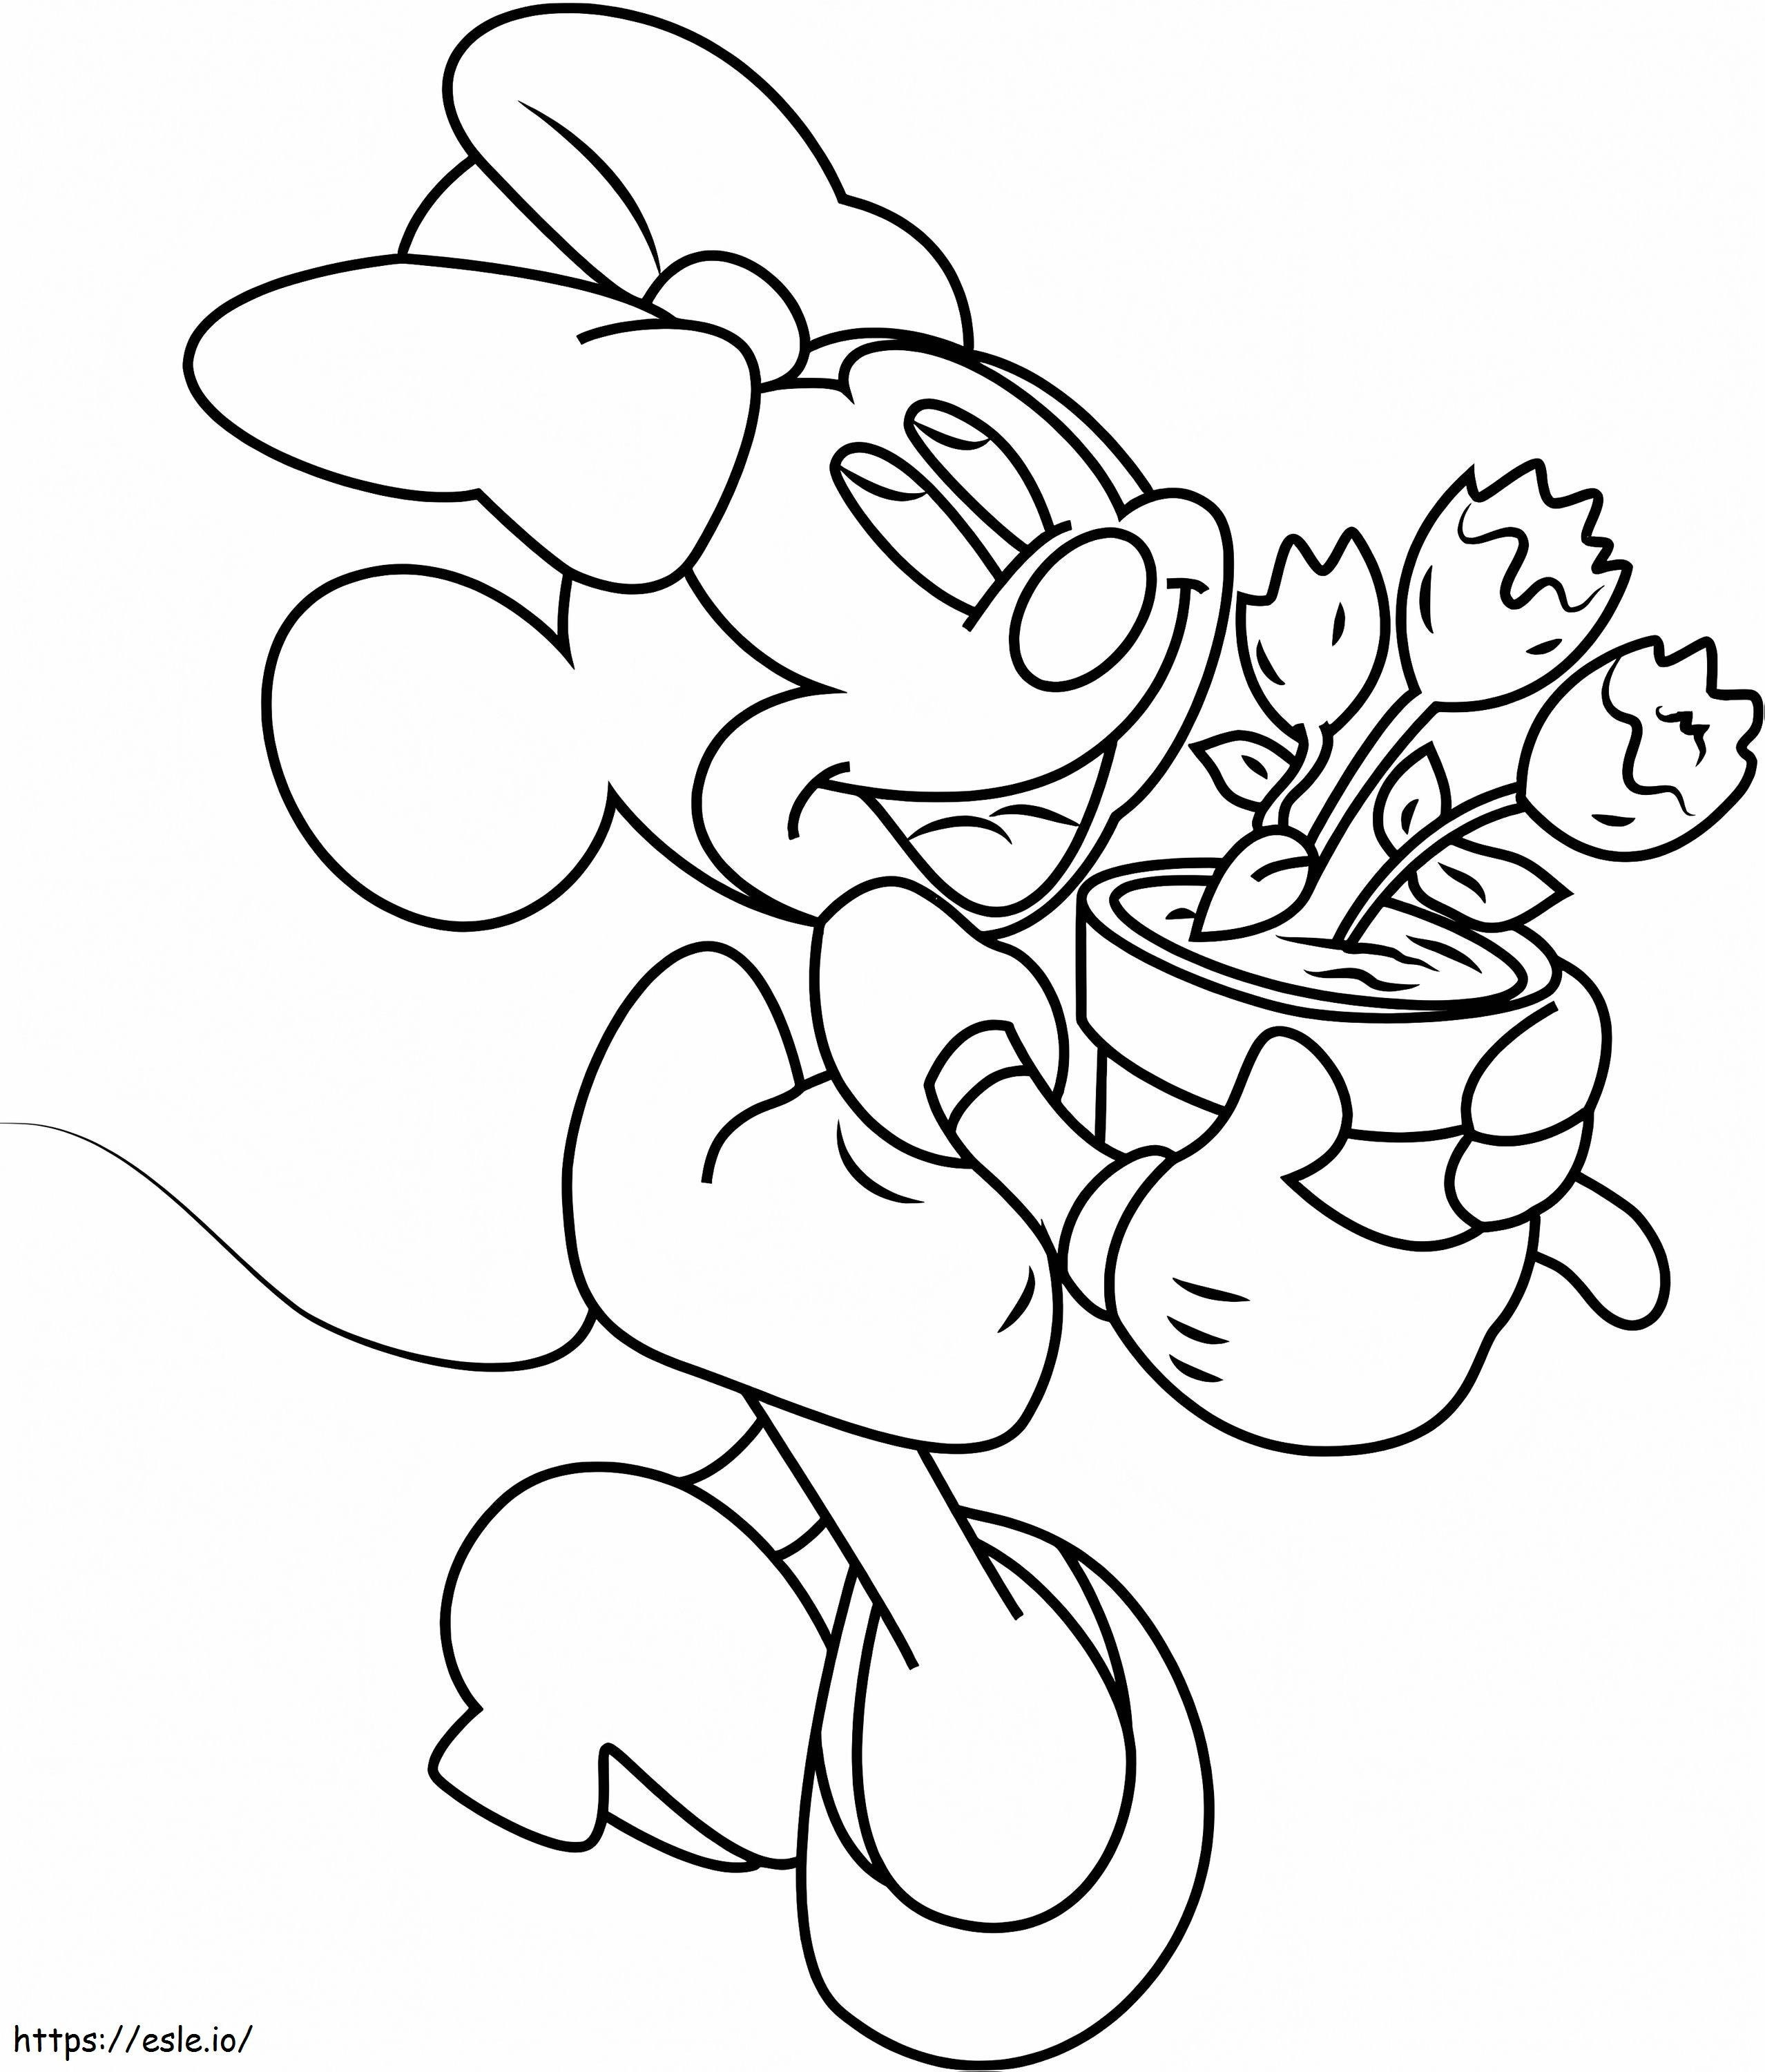 Minnie Maus mit Blumentopf ausmalbilder